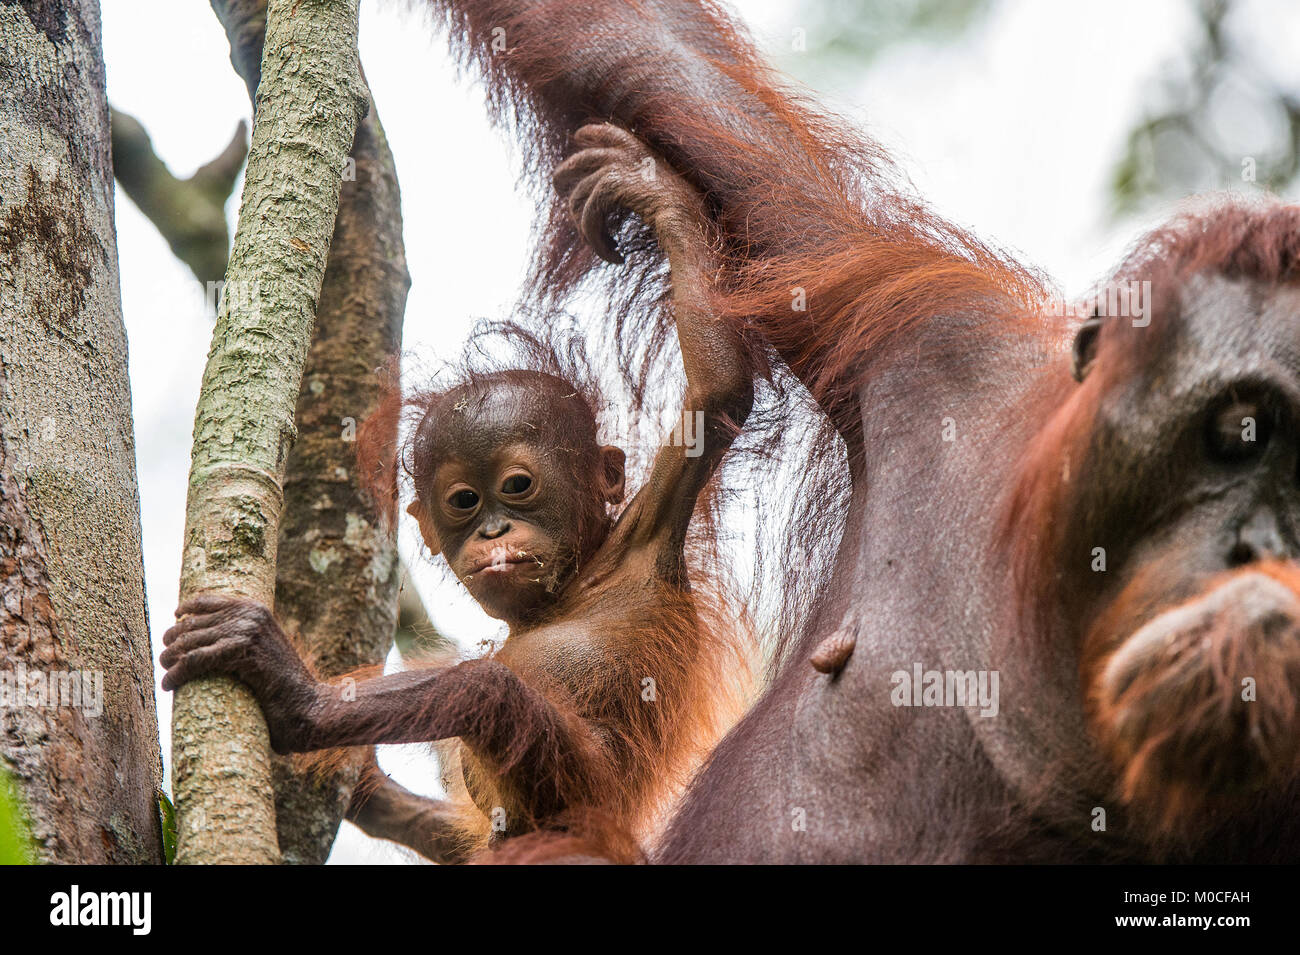 Baby Orang-utan (Pongo pygmaeus) in der wilden Natur. Natürlicher Lebensraum im Regenwald der Insel Borneo. Indonesien. Stockfoto